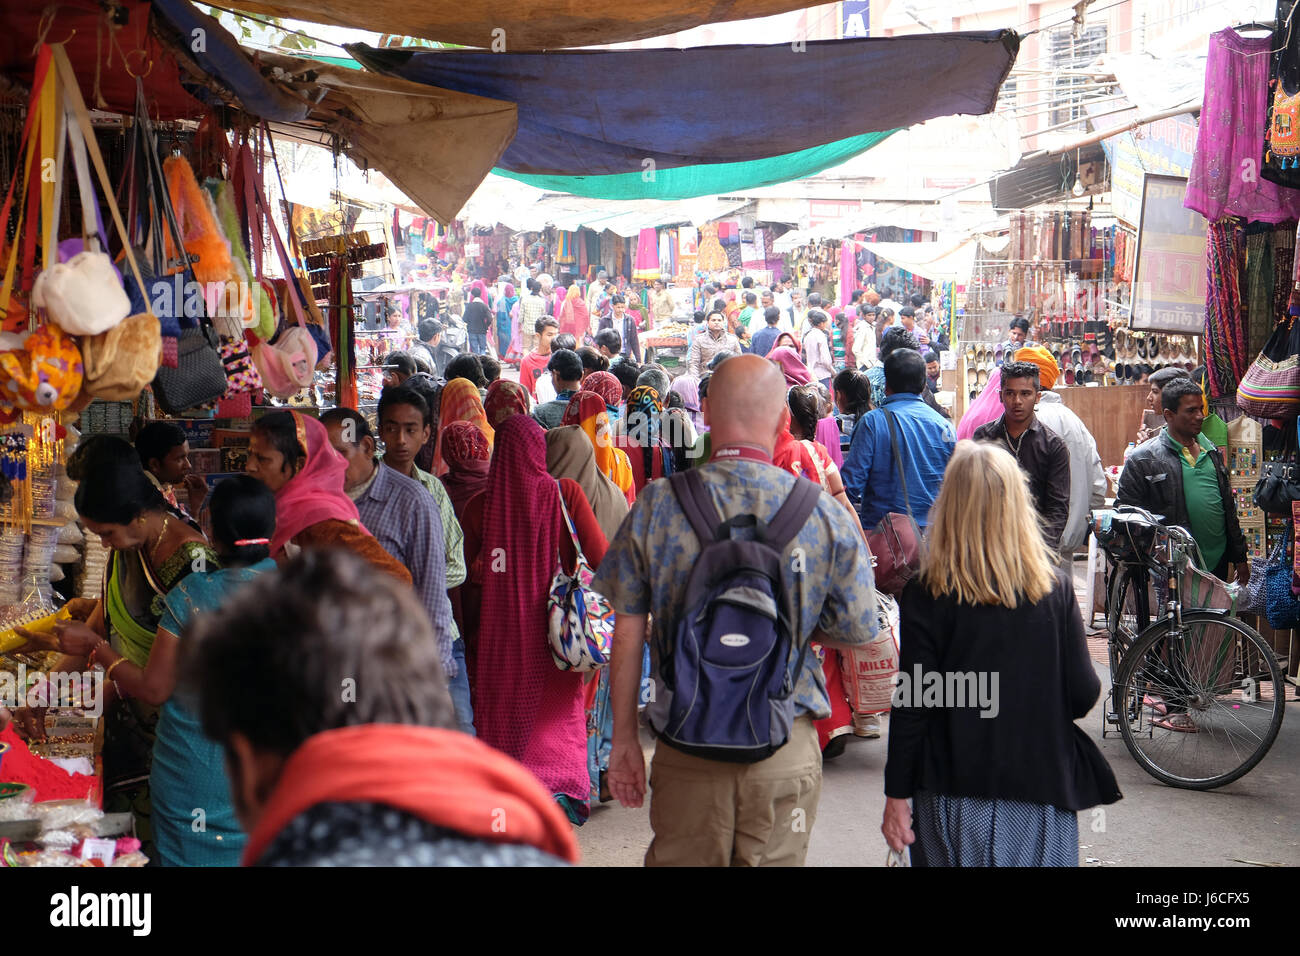 Die Menschen gehen durch die Stadt in Pushkar, Indien. Stockfoto